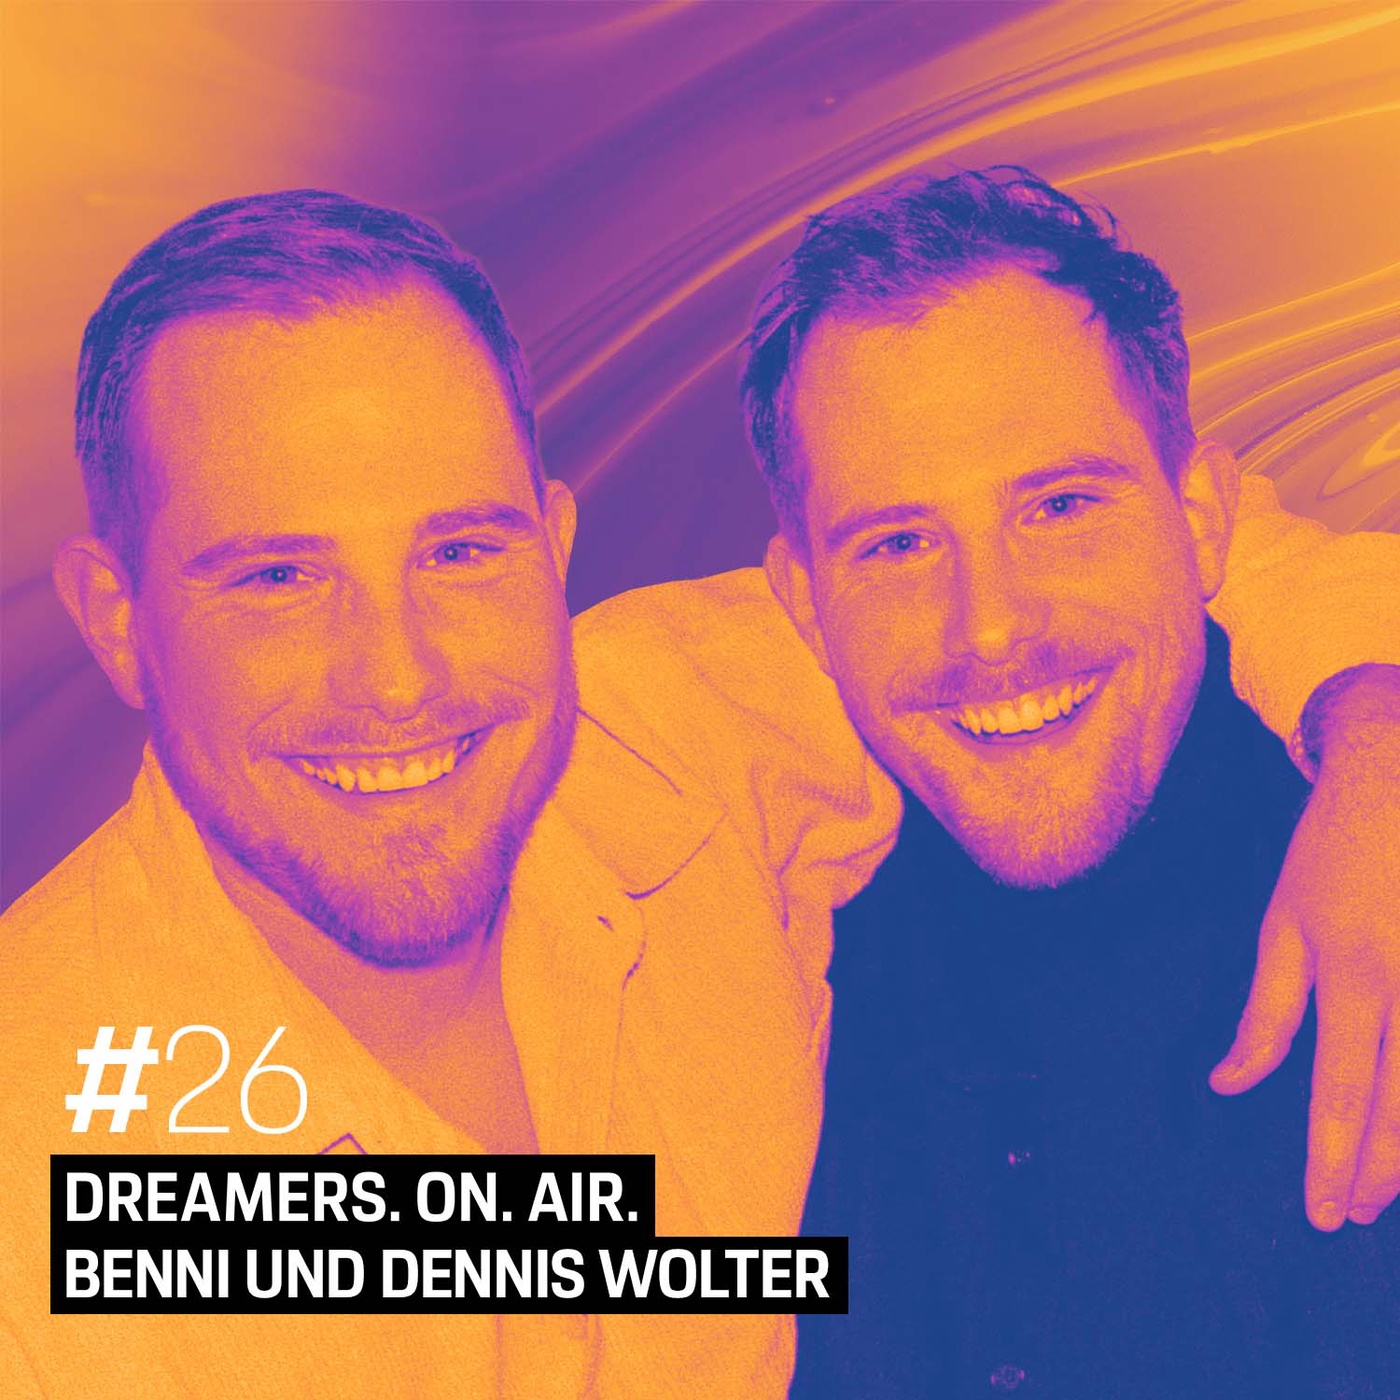 Benni und Dennis Wolter – Es ist ganz wichtig, sich treu zu bleiben.